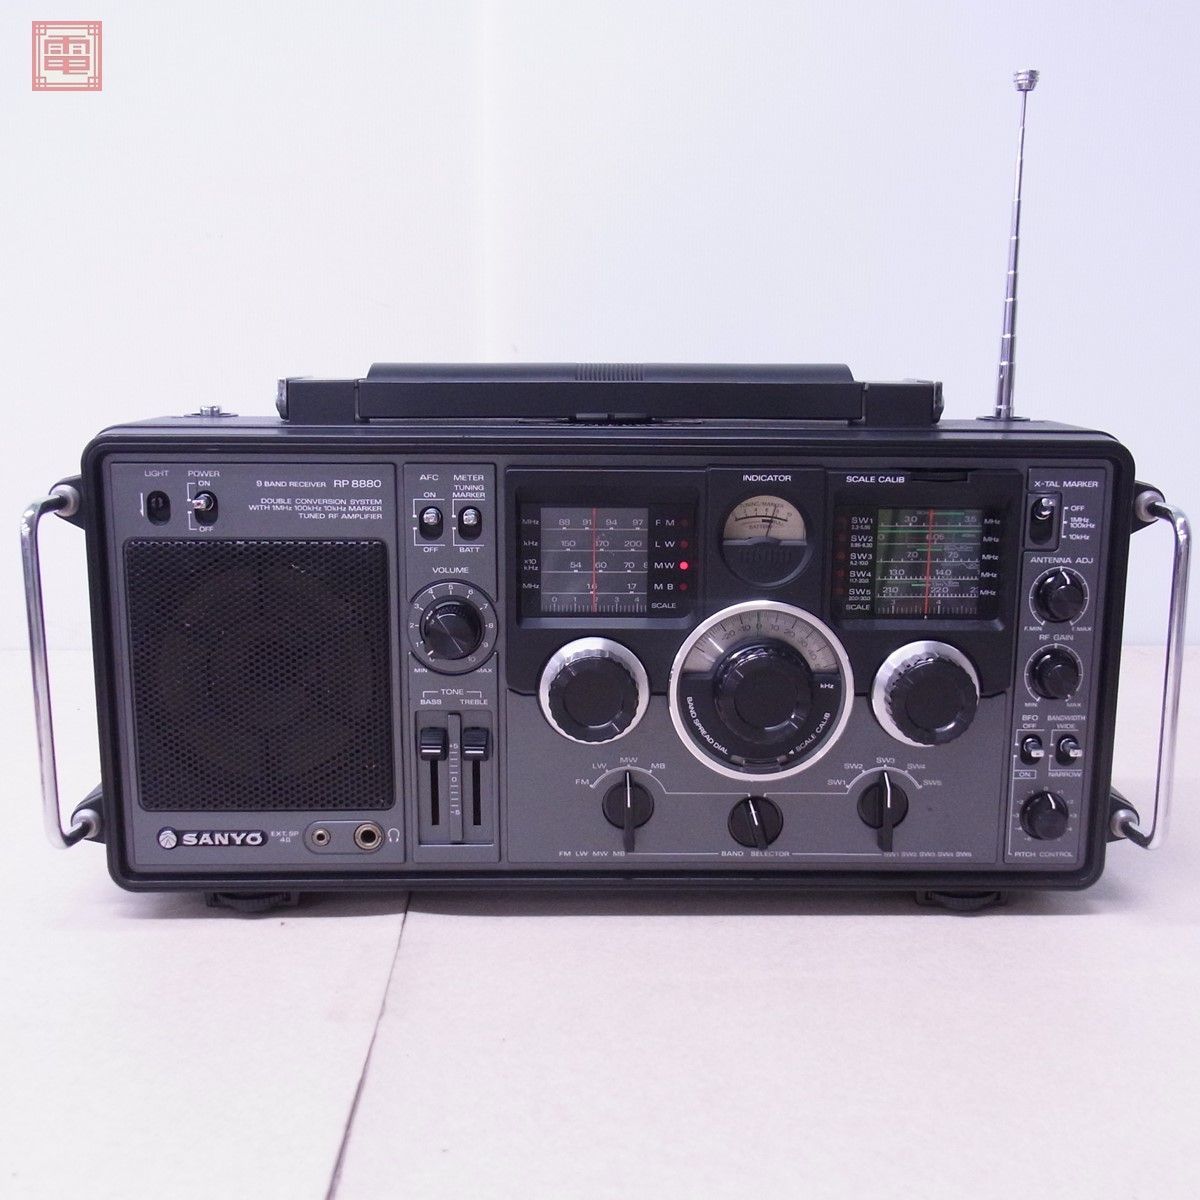 サンヨー SANYO RP8880 AM/FM/MB/SW 9バンド BCLラジオ RP-8880【40_画像1